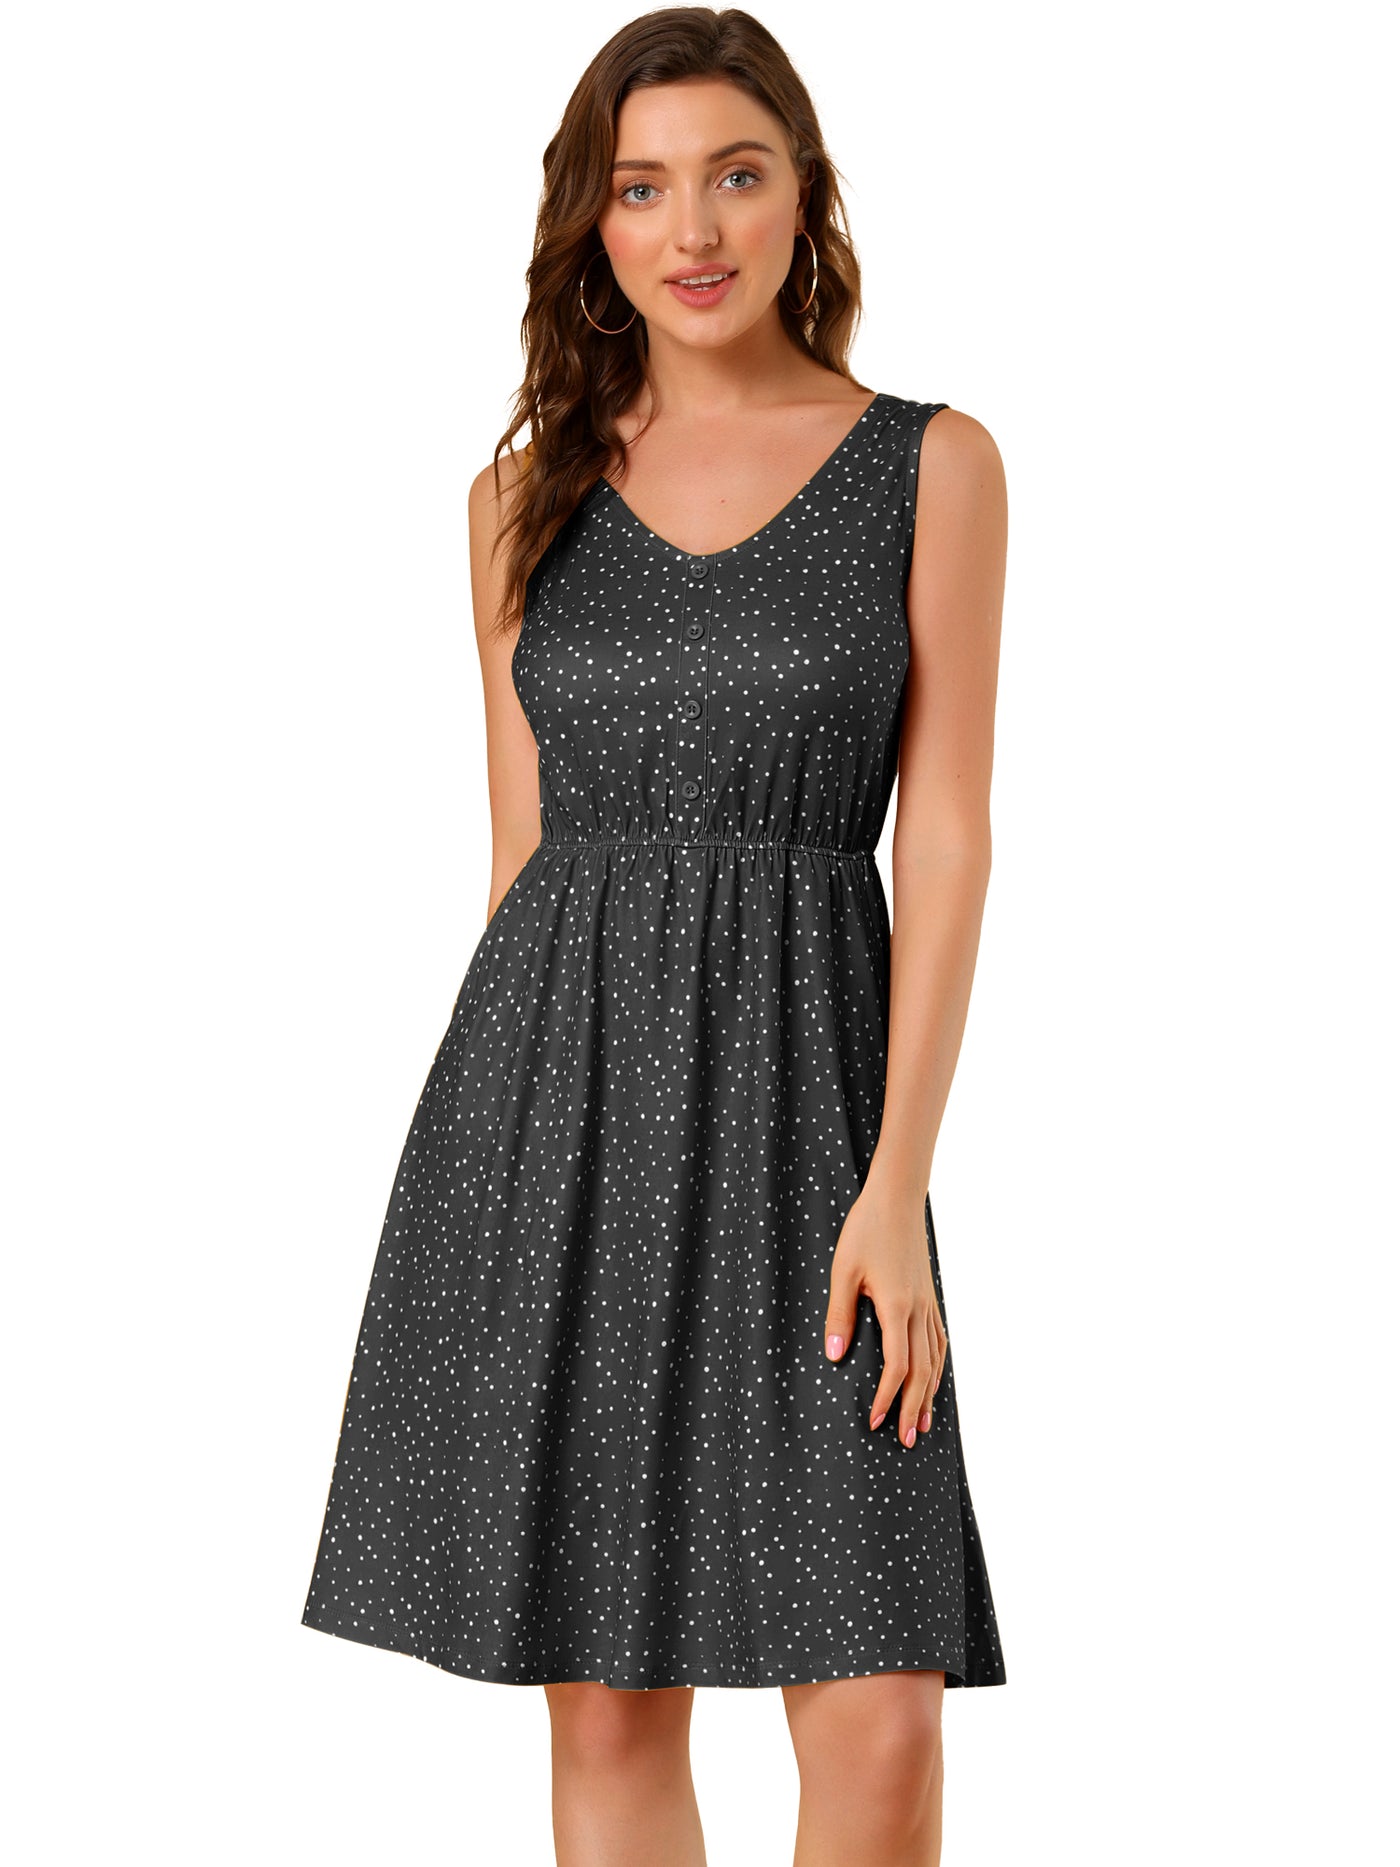 Allegra K Polka Dots Sleeveless Dress Elastic Waist Midi Sundress with Pockets